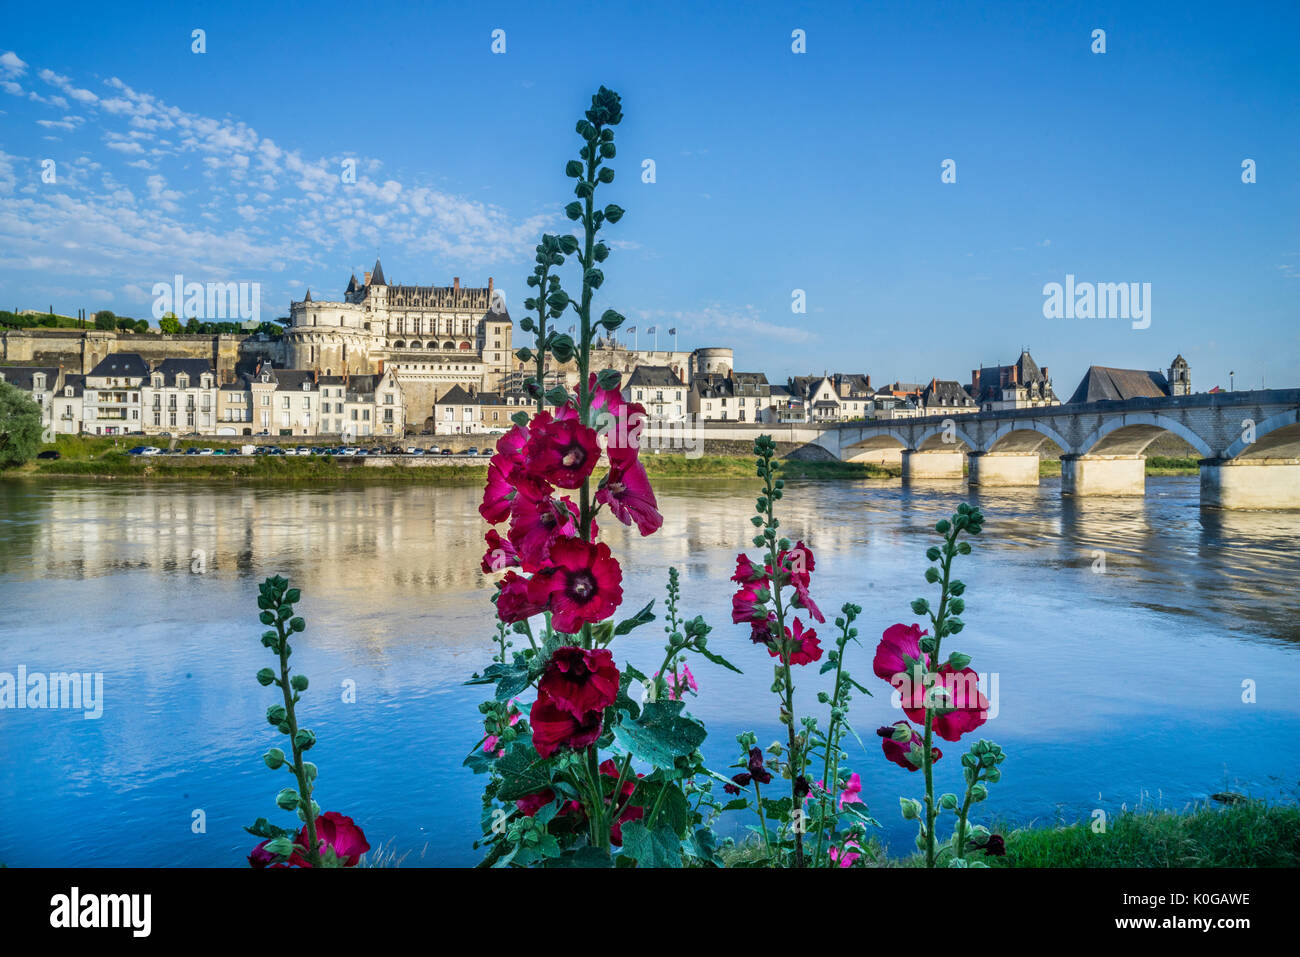 France, Centre-Val de Loire, Malva flowers on the banks of Loire River with view of Amboise, Château d'Amboise and Pont du Maréchal Leclerc Stock Photo